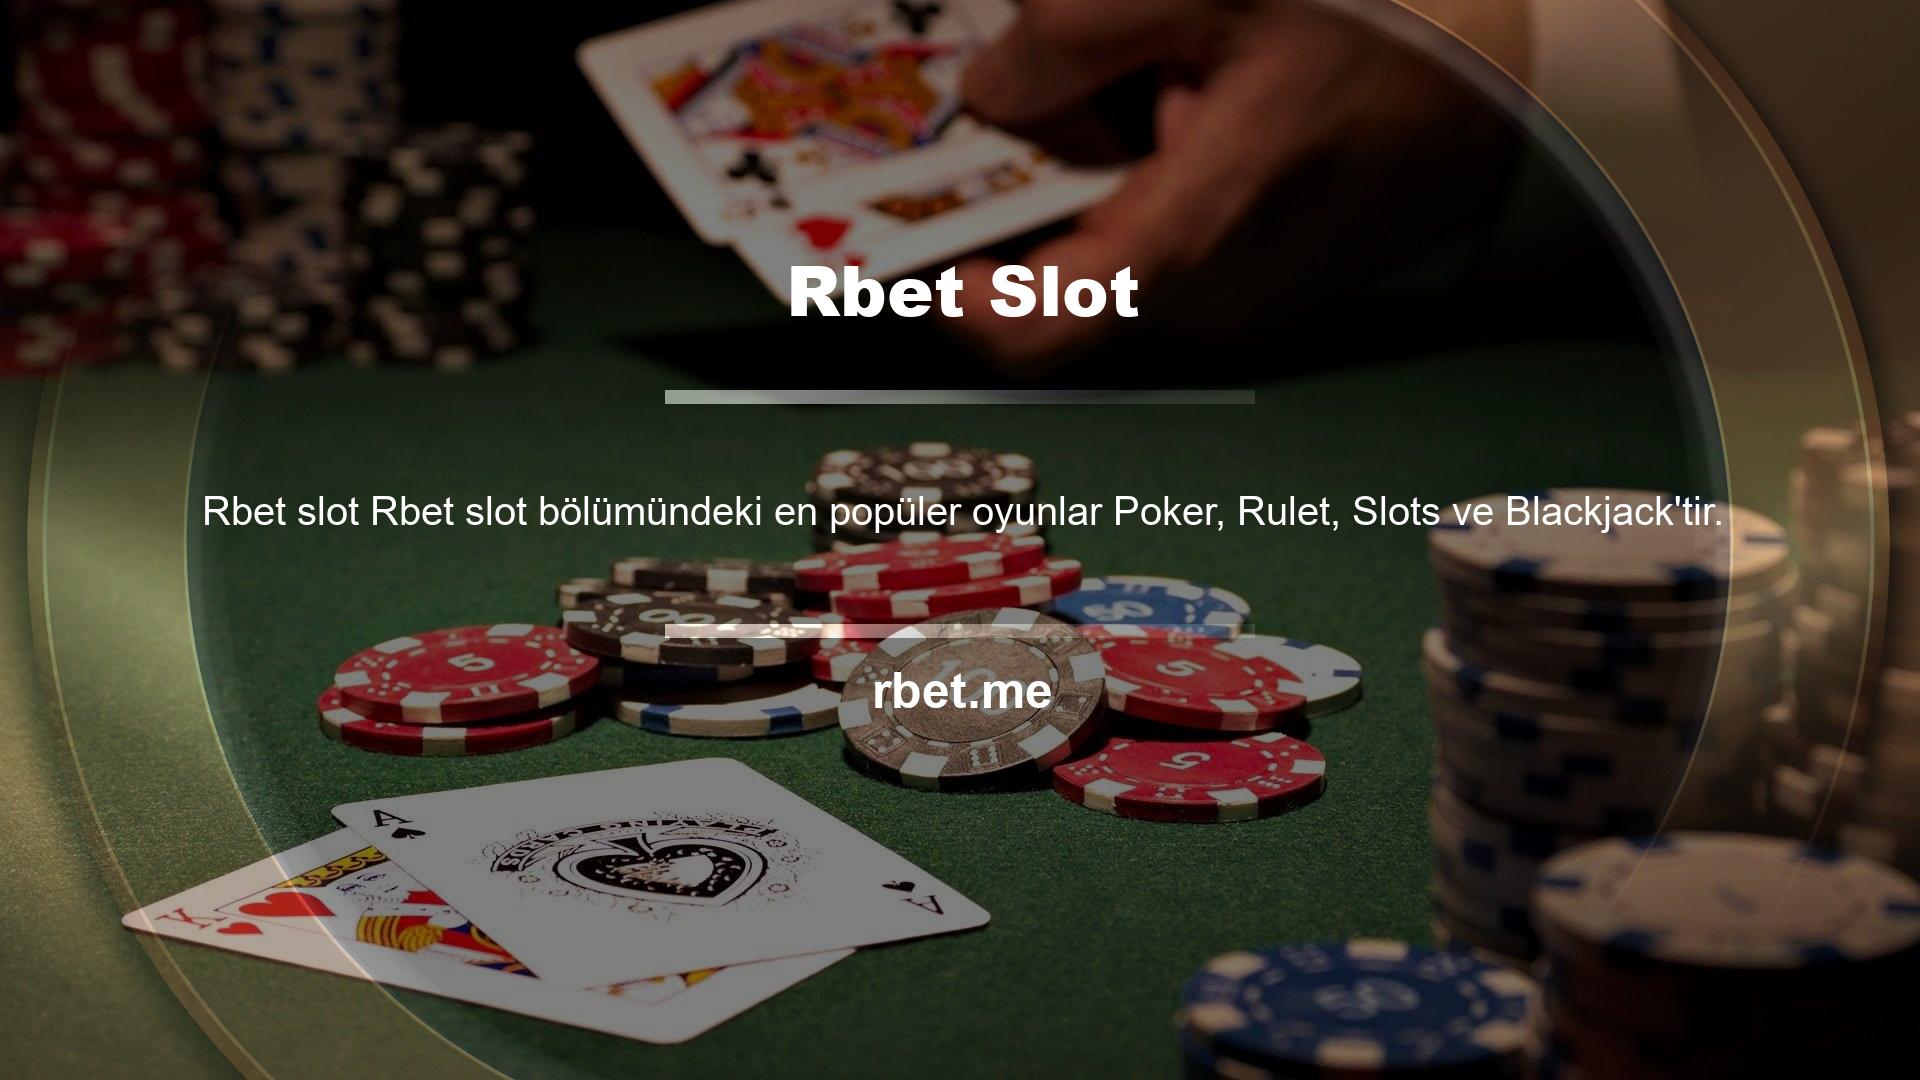 Poker oyununun popülaritesine rağmen site bir kısayol haline geldi